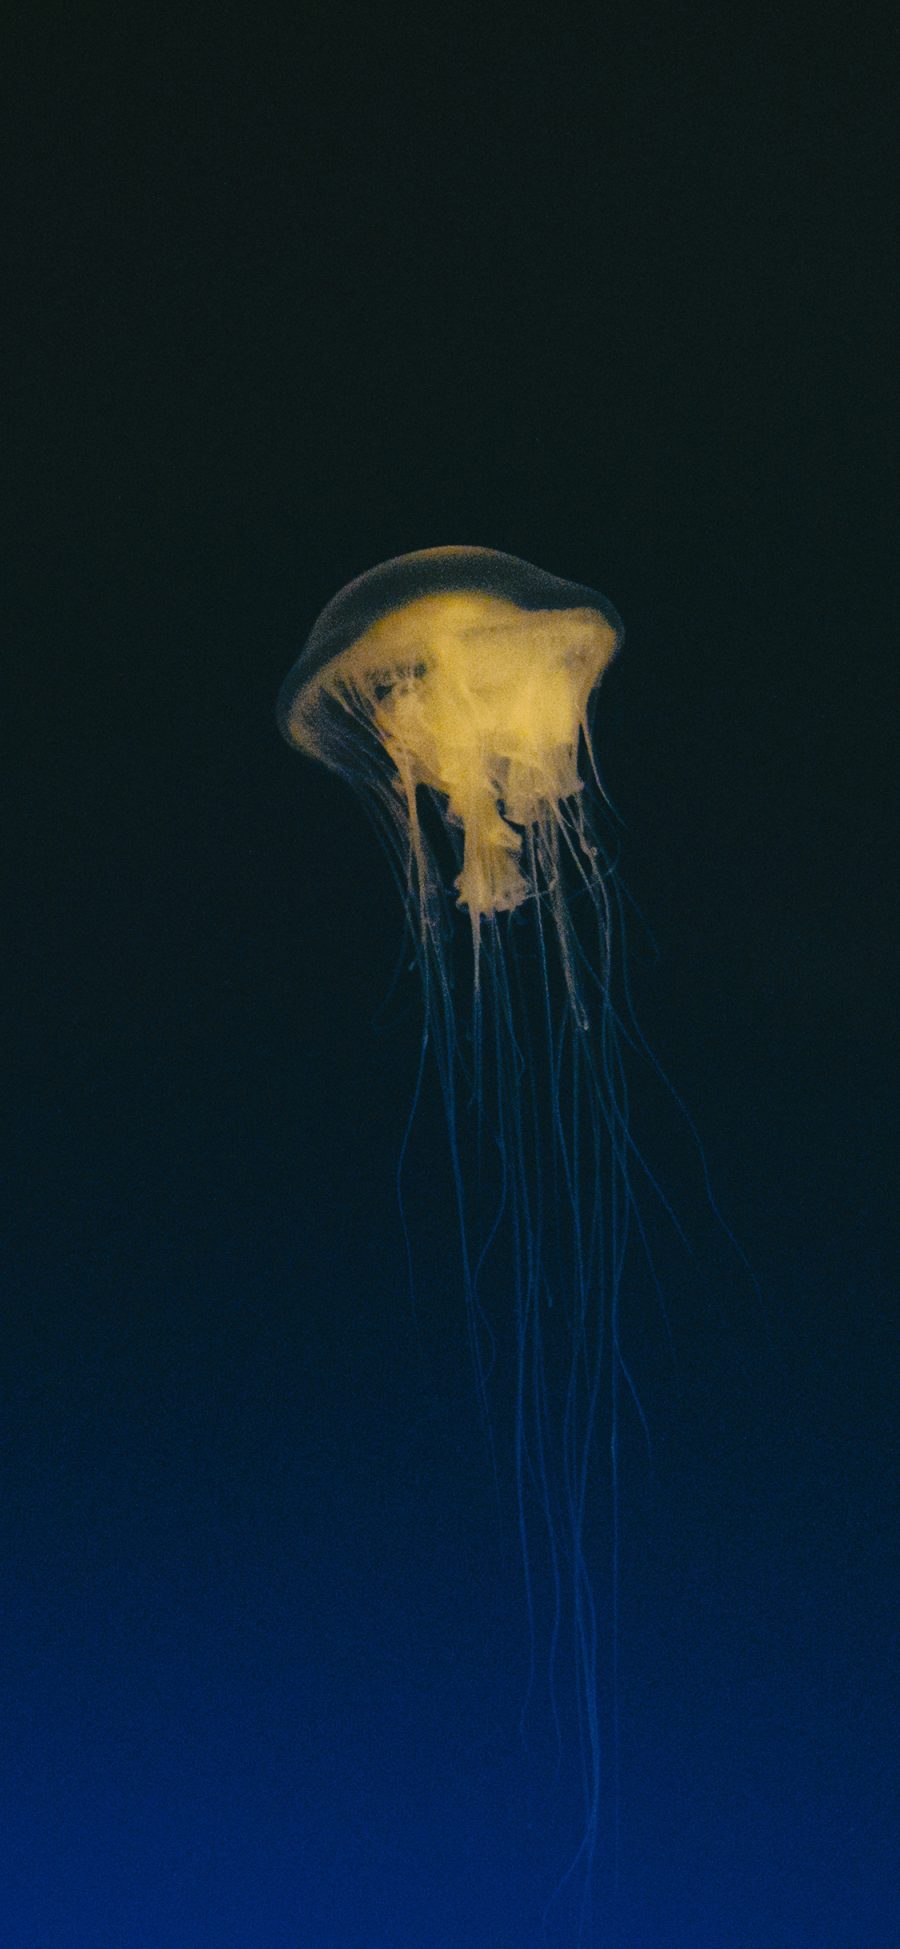 [2436×1125]海洋生物 水母 海蜇 触角 苹果手机壁纸图片